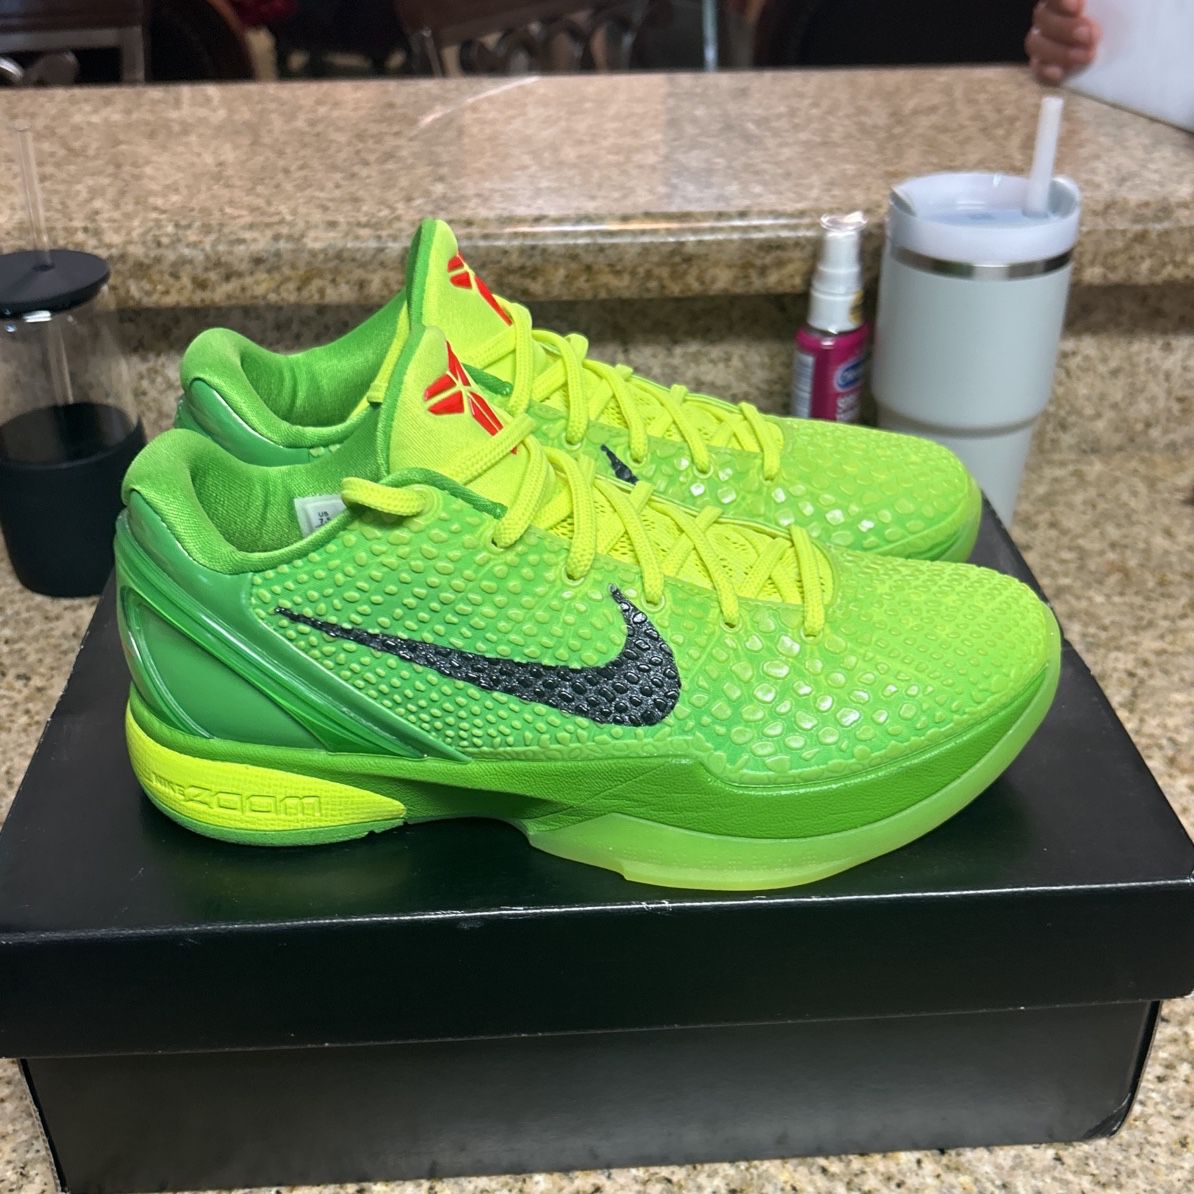 Nike Kobe Grinches 2020